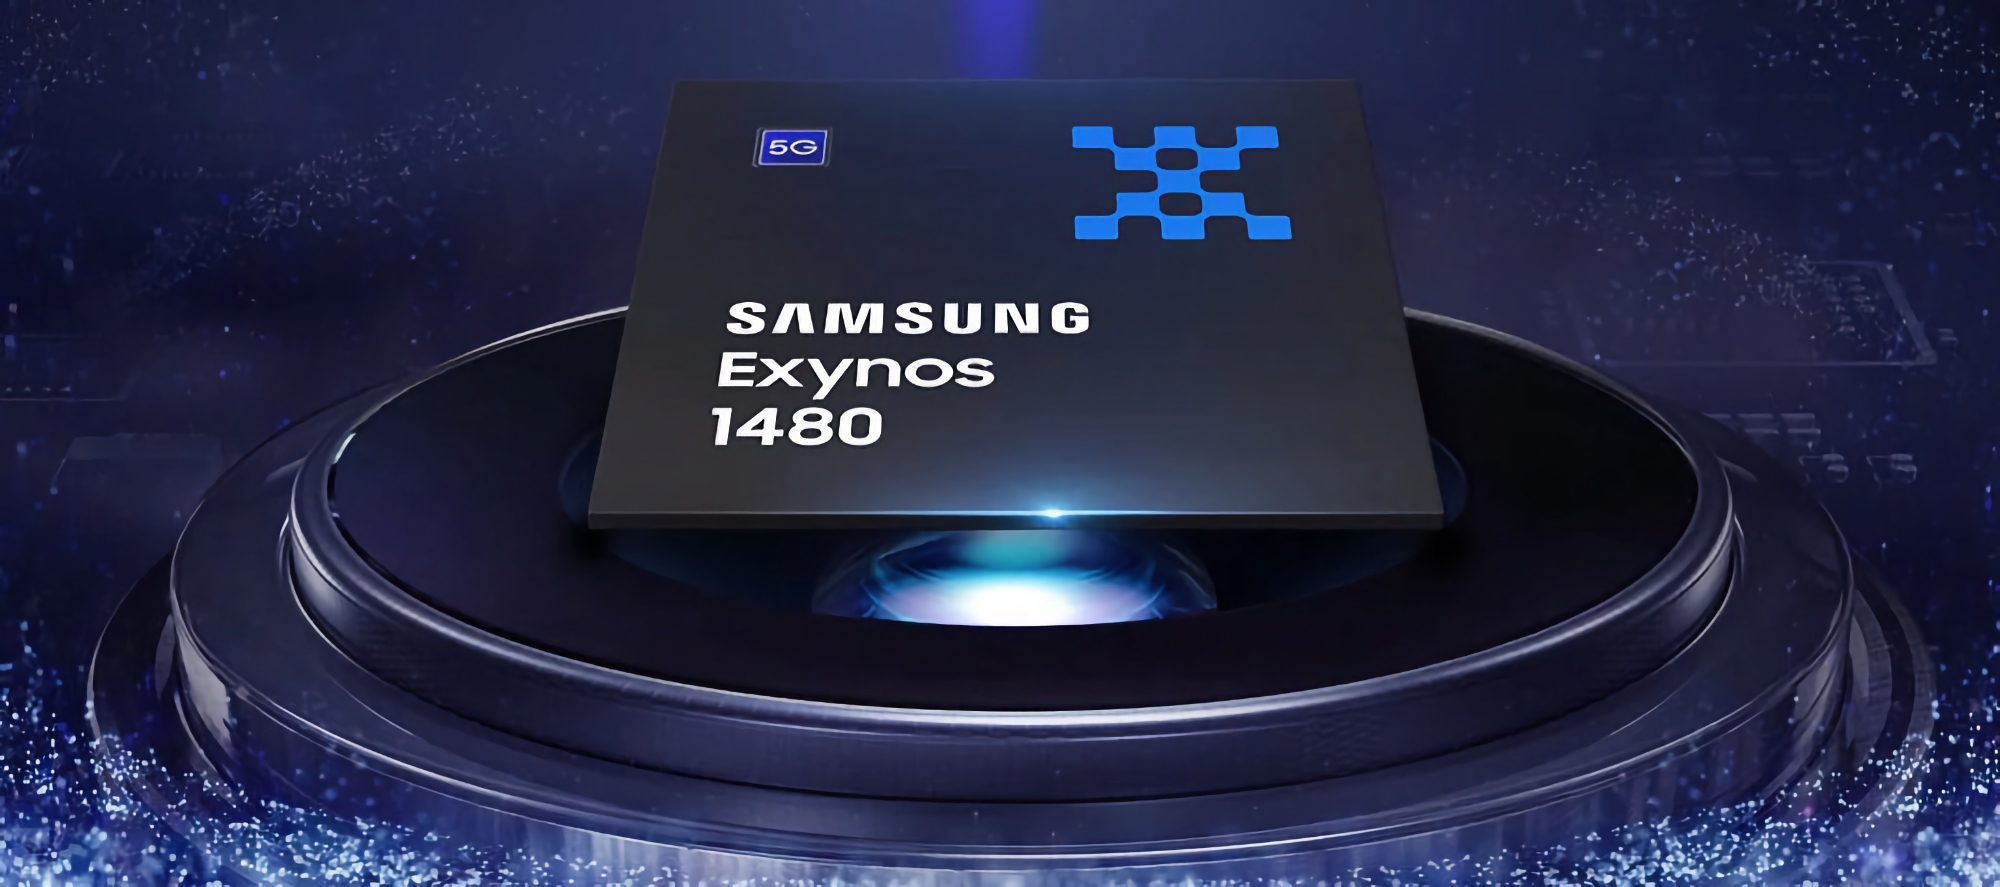 Samsung har afsløret specifikationerne for Exynos 1480-chippen: otte kerner, 4 nanometer og Xclipse 530-grafik med AMD RDNA 2-arkitektur.